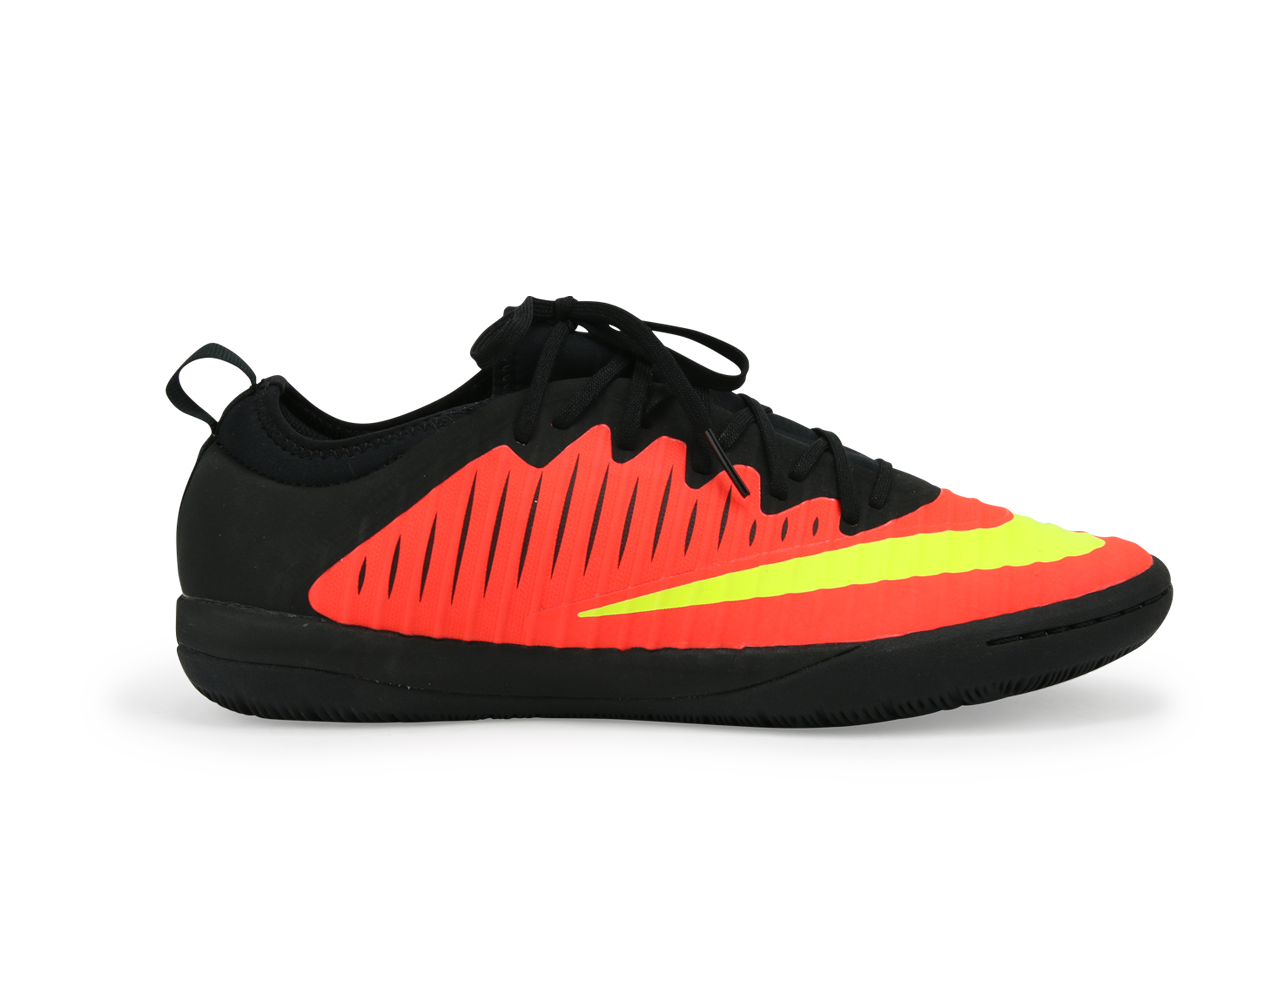 Nike Men's MercurialX Finale II Indoor Soccer Shoes  Total Crimson/Volt/Pink